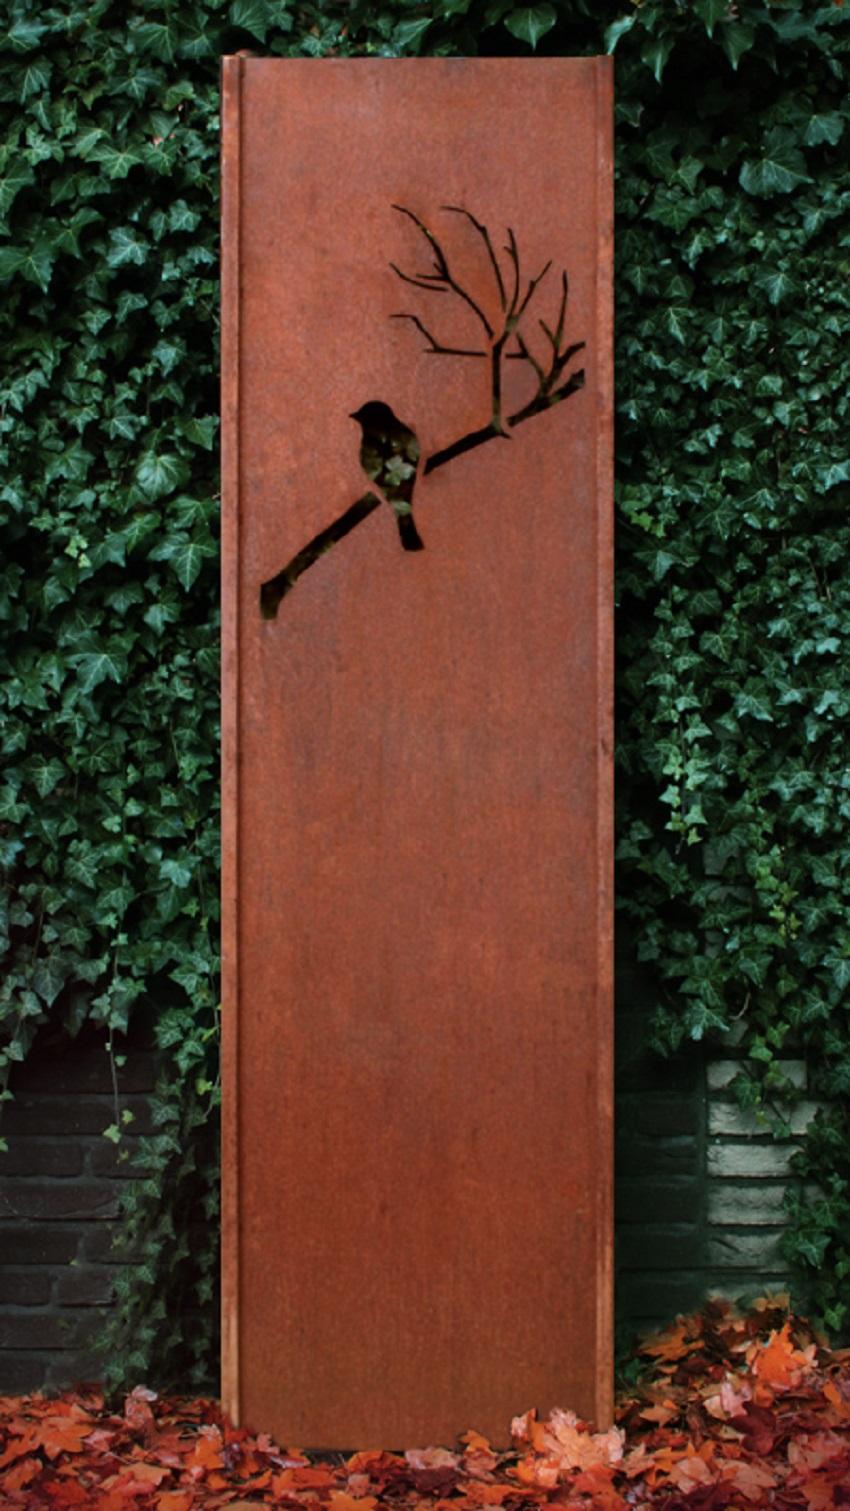 Steel Garden Wall - "Bird" - Modern Outdoor Ornament - 54×195 cm - Sculpture by Stefan Traloc